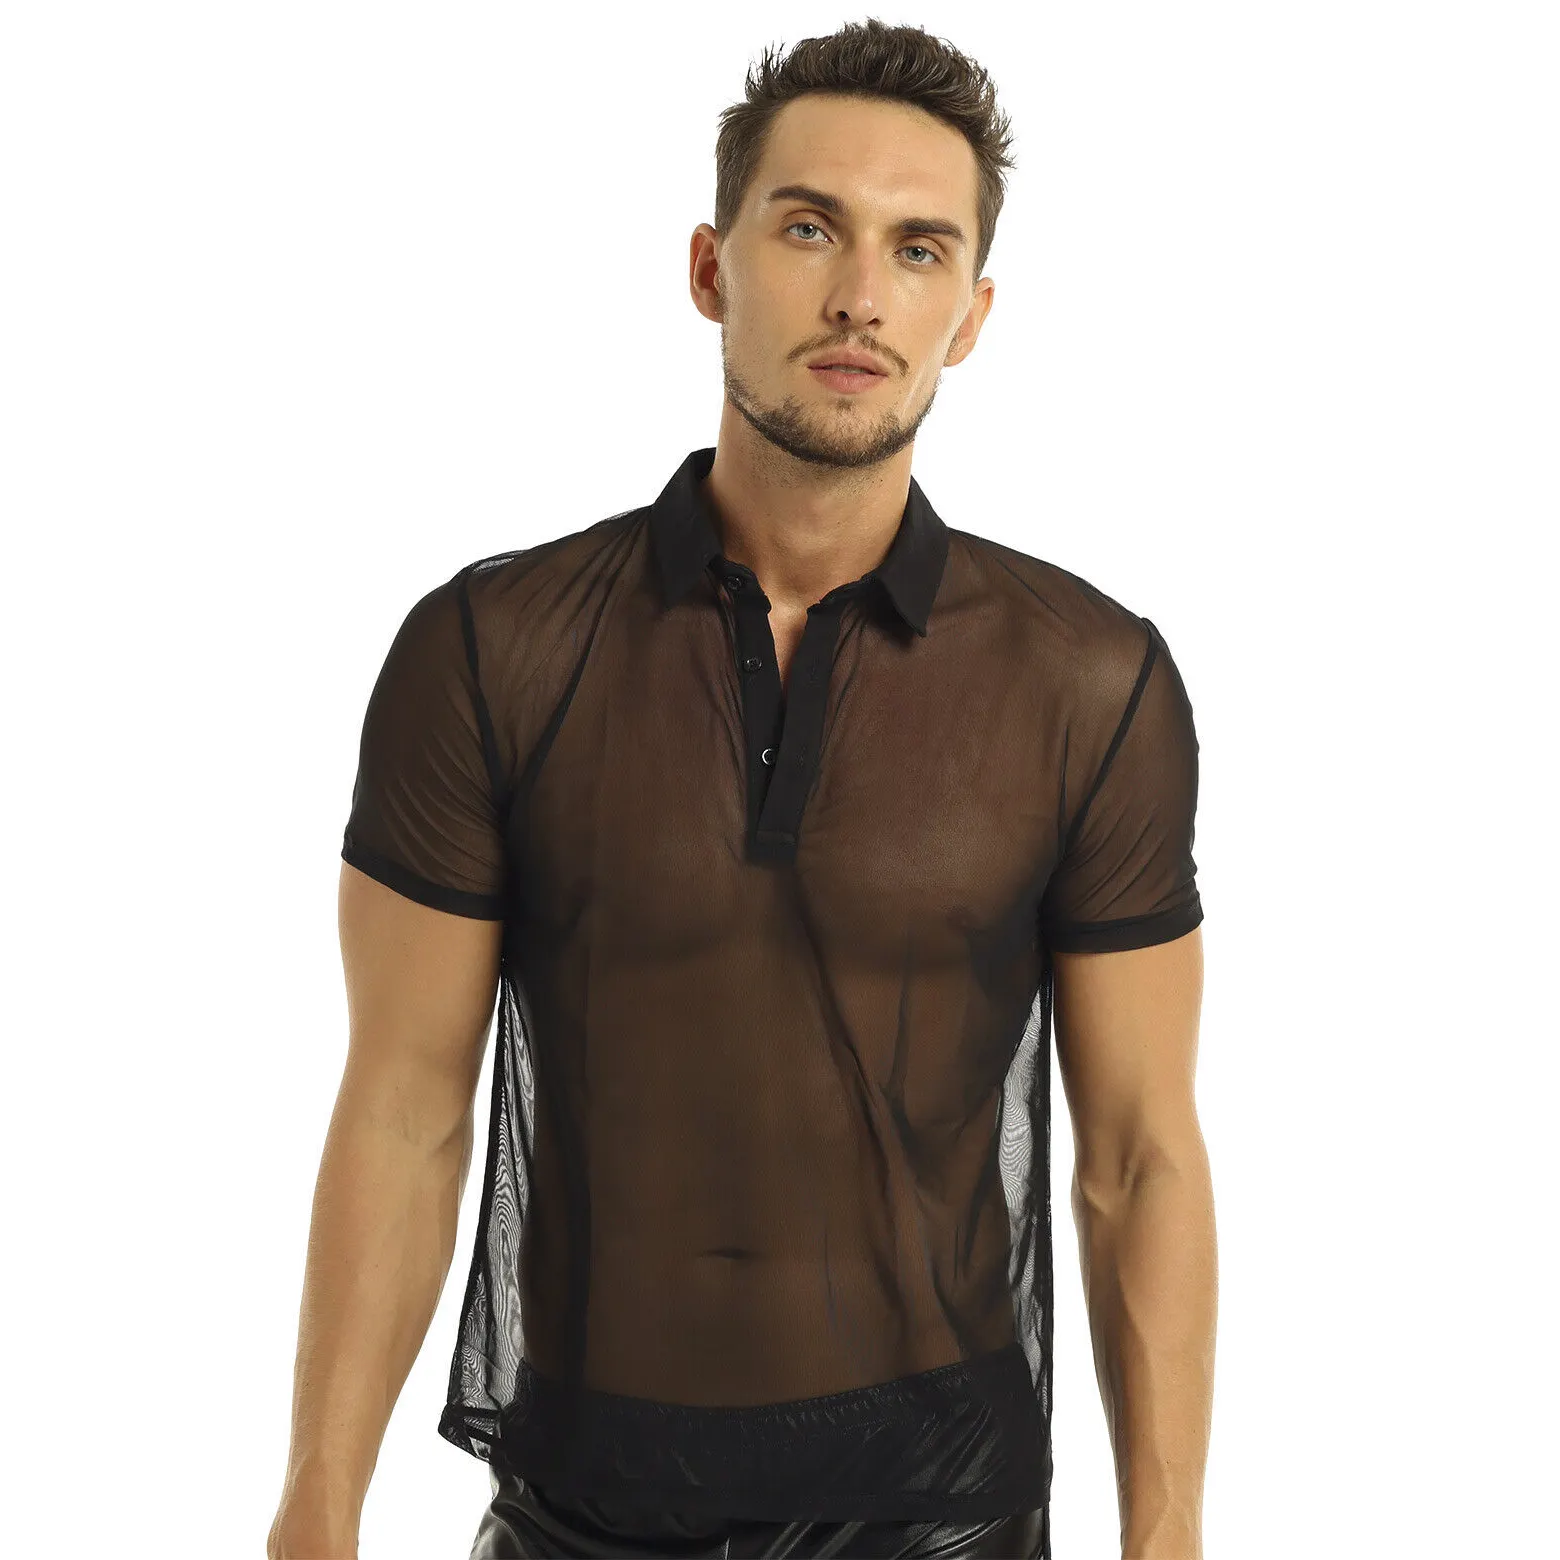 Erkekler örgü See-Through uzun kollu gömlek Tops şeffaf gömlek kolsuz tişört seksi erkek transparan sırf ince kazak clubwear